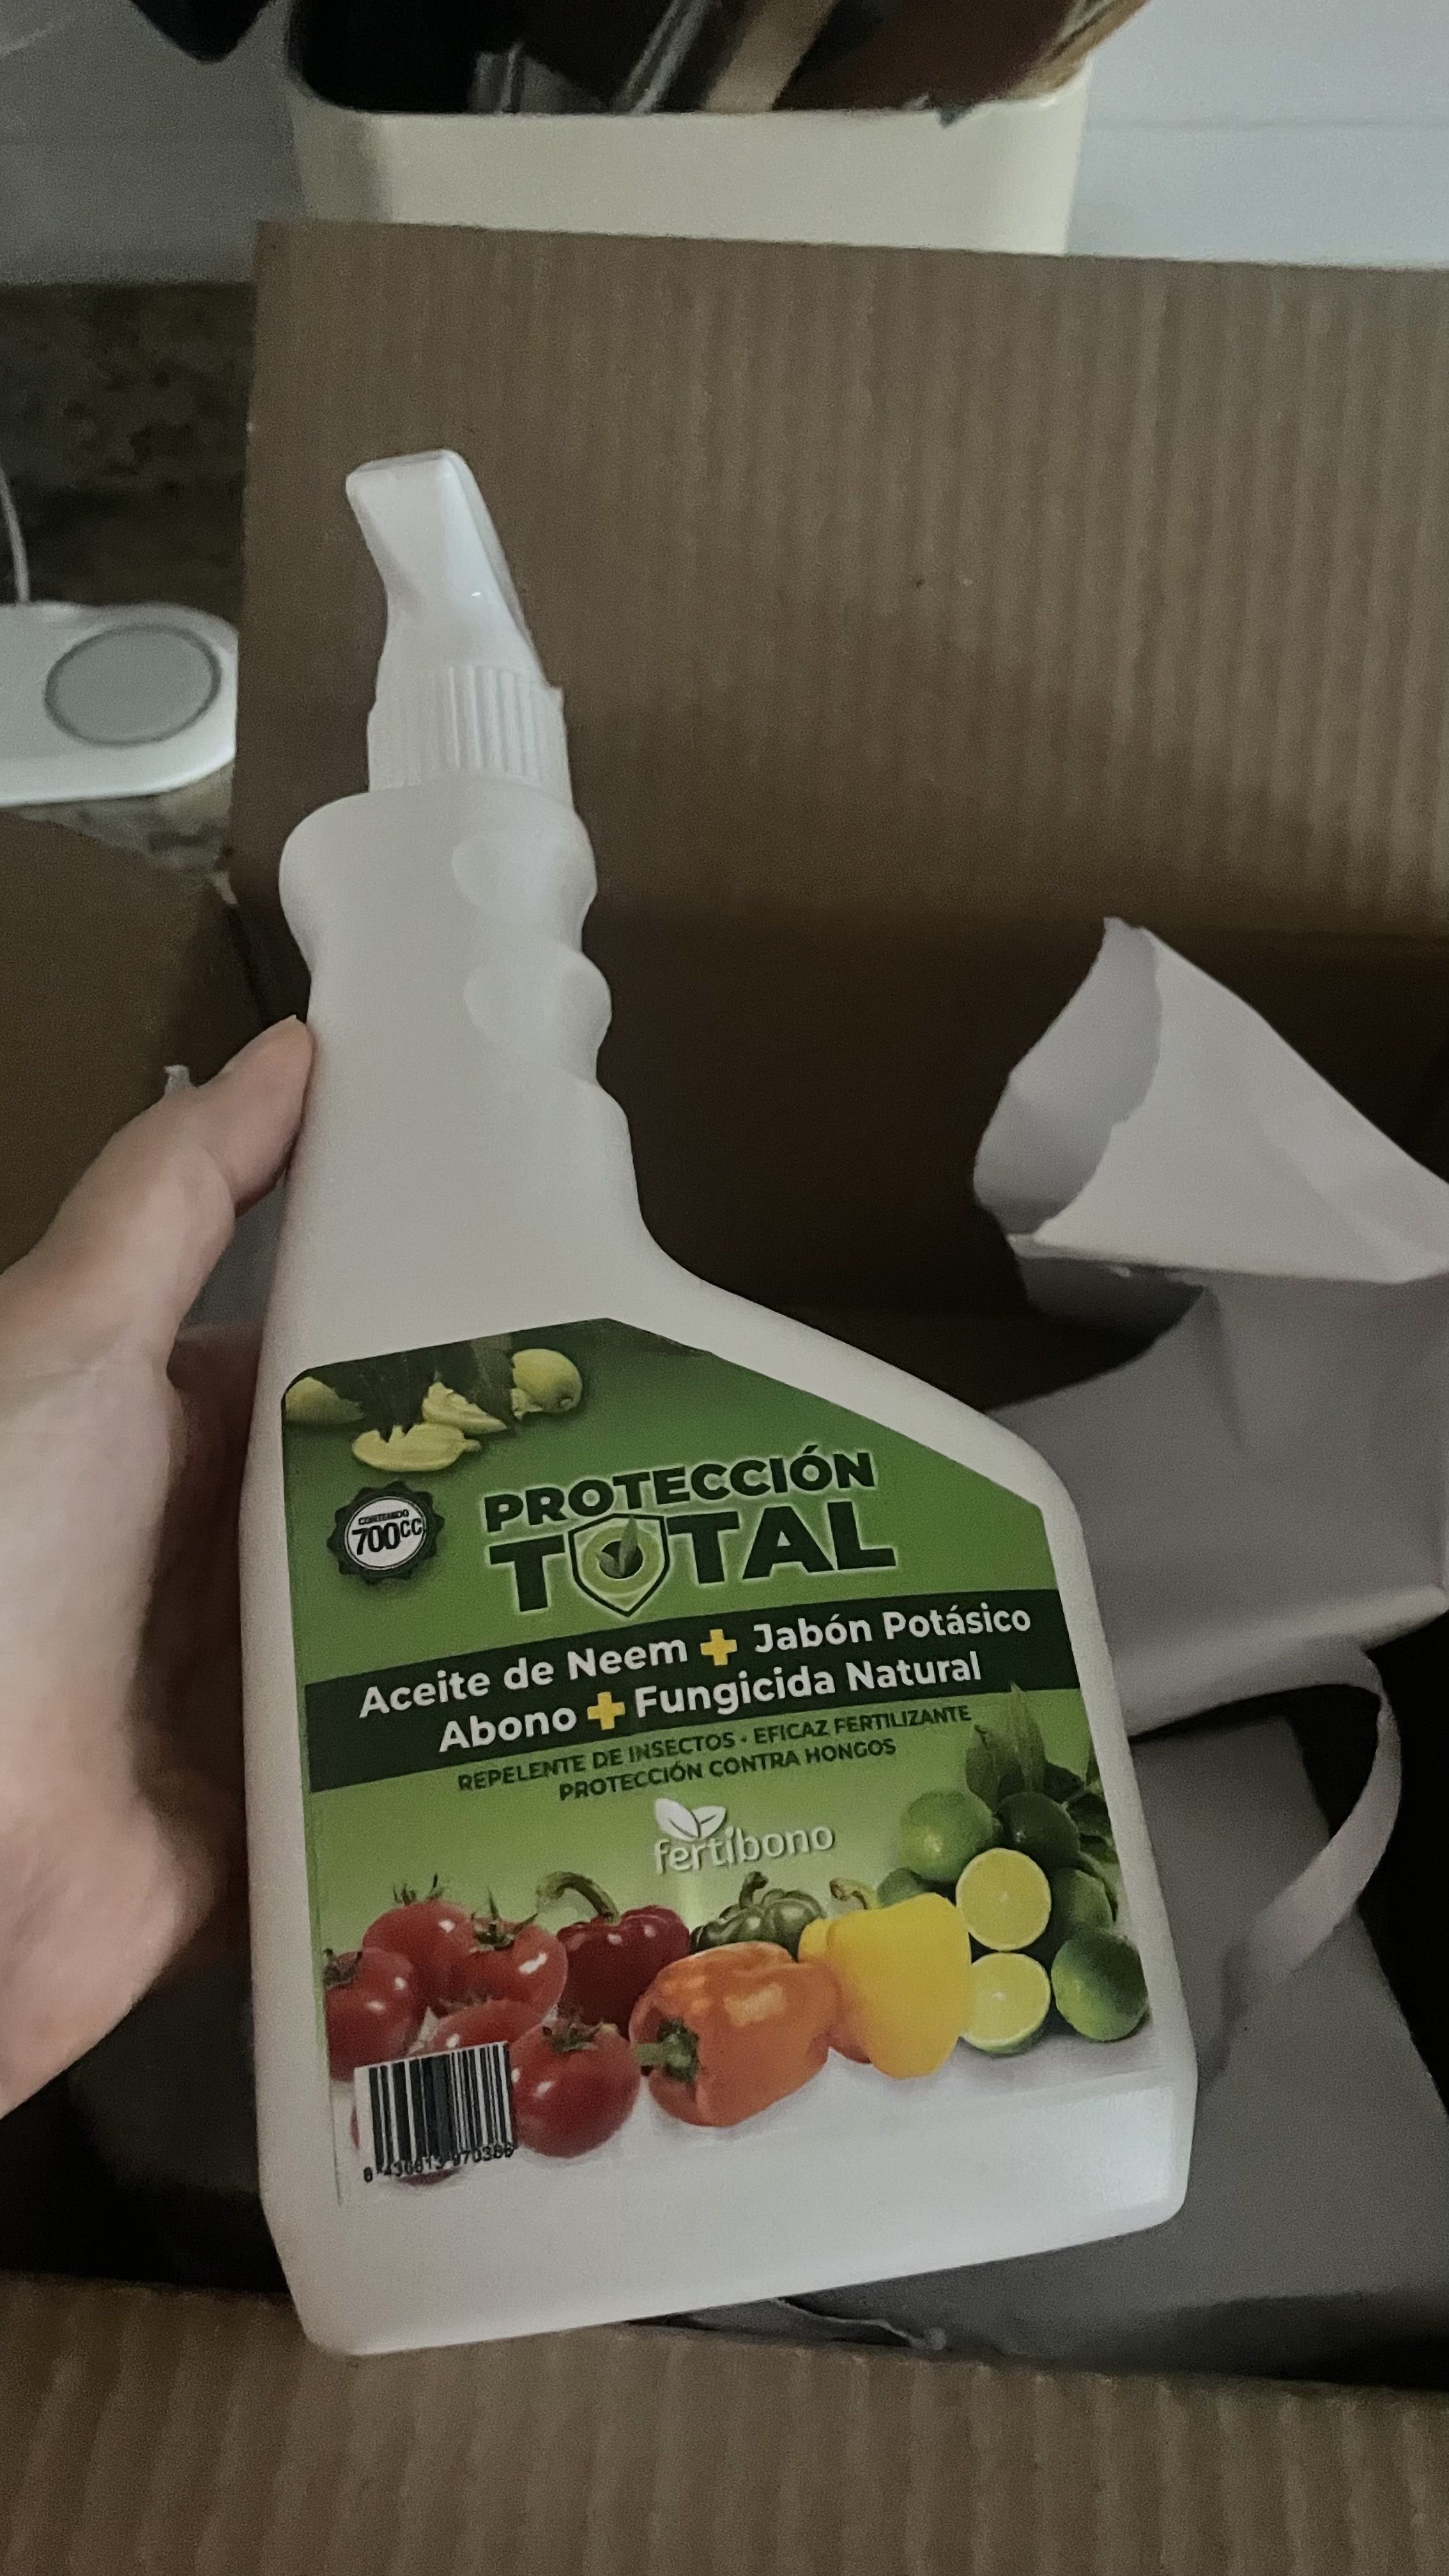 Jabón Potásico,Aceite de Neem y Abono Natural,(750ml),Protección,Prevención  y Curación de Enfermedades Fúngicas e Insectos Dañinos en Plantas